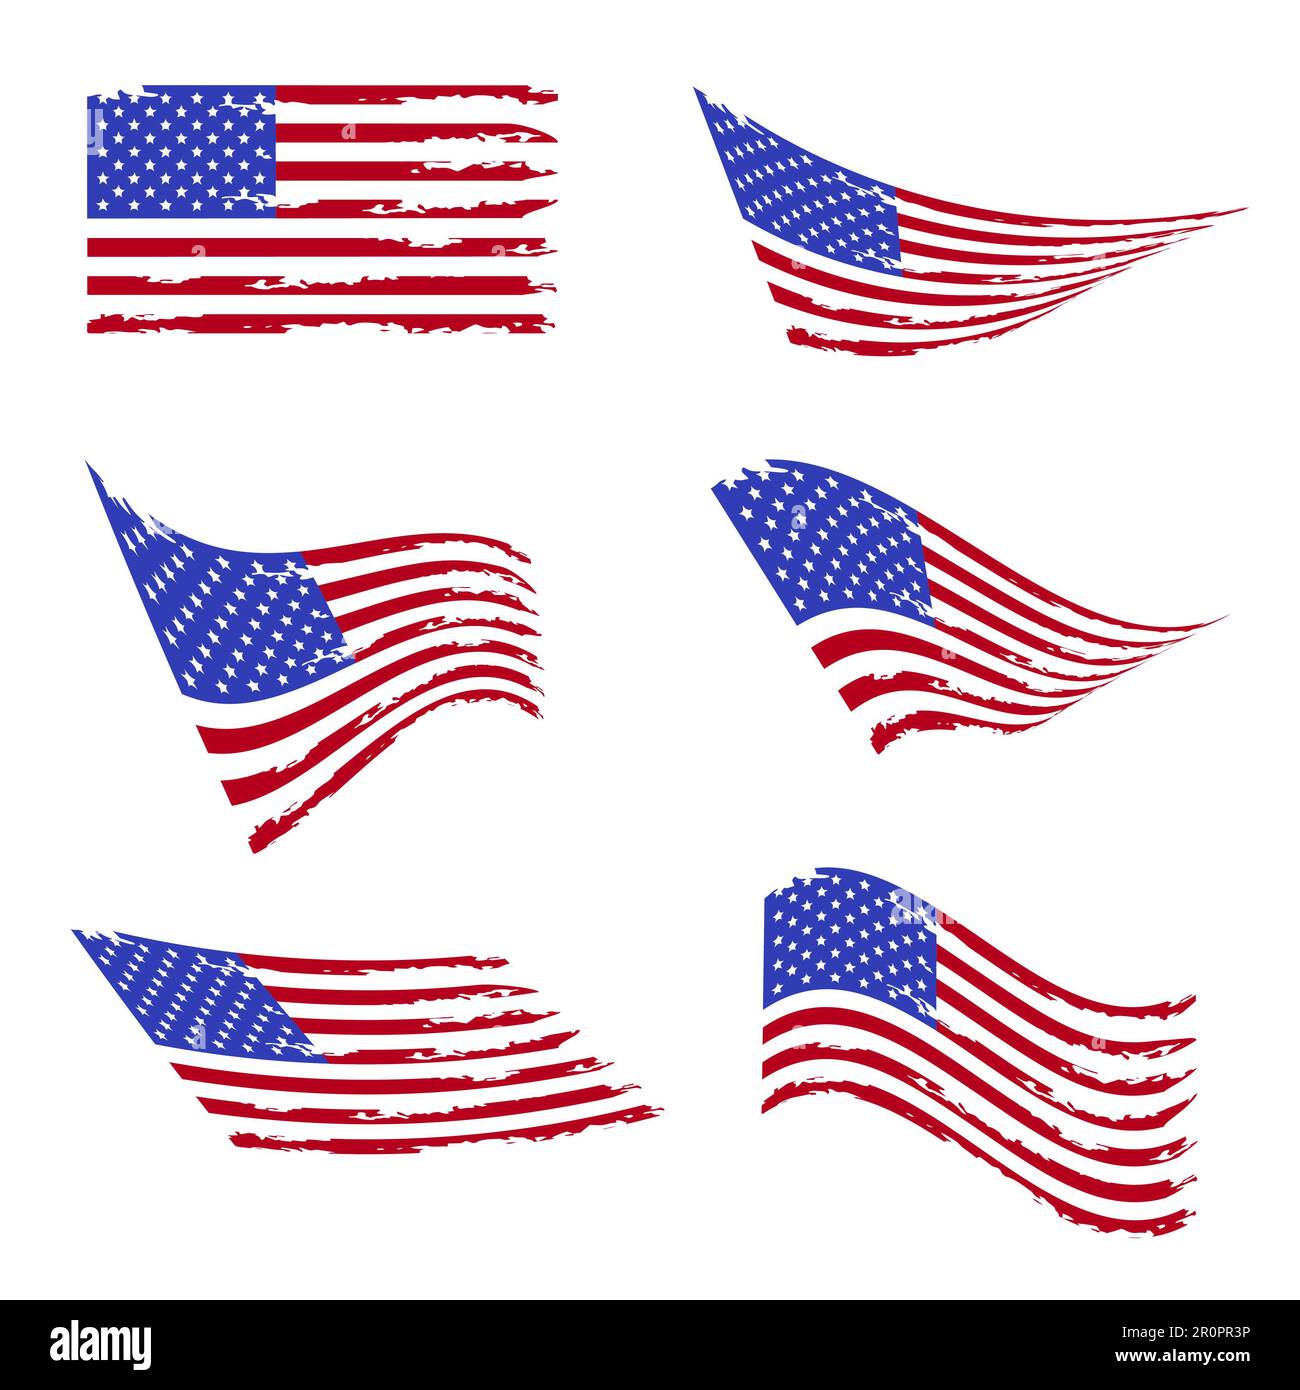 Die amerikanische Wellenflagge ist gesetzt. Alte alte Flagge der Vereinigten Staaten. Grunge USA-Flagge. Isoliert auf weißem Hintergrund. Stockfoto